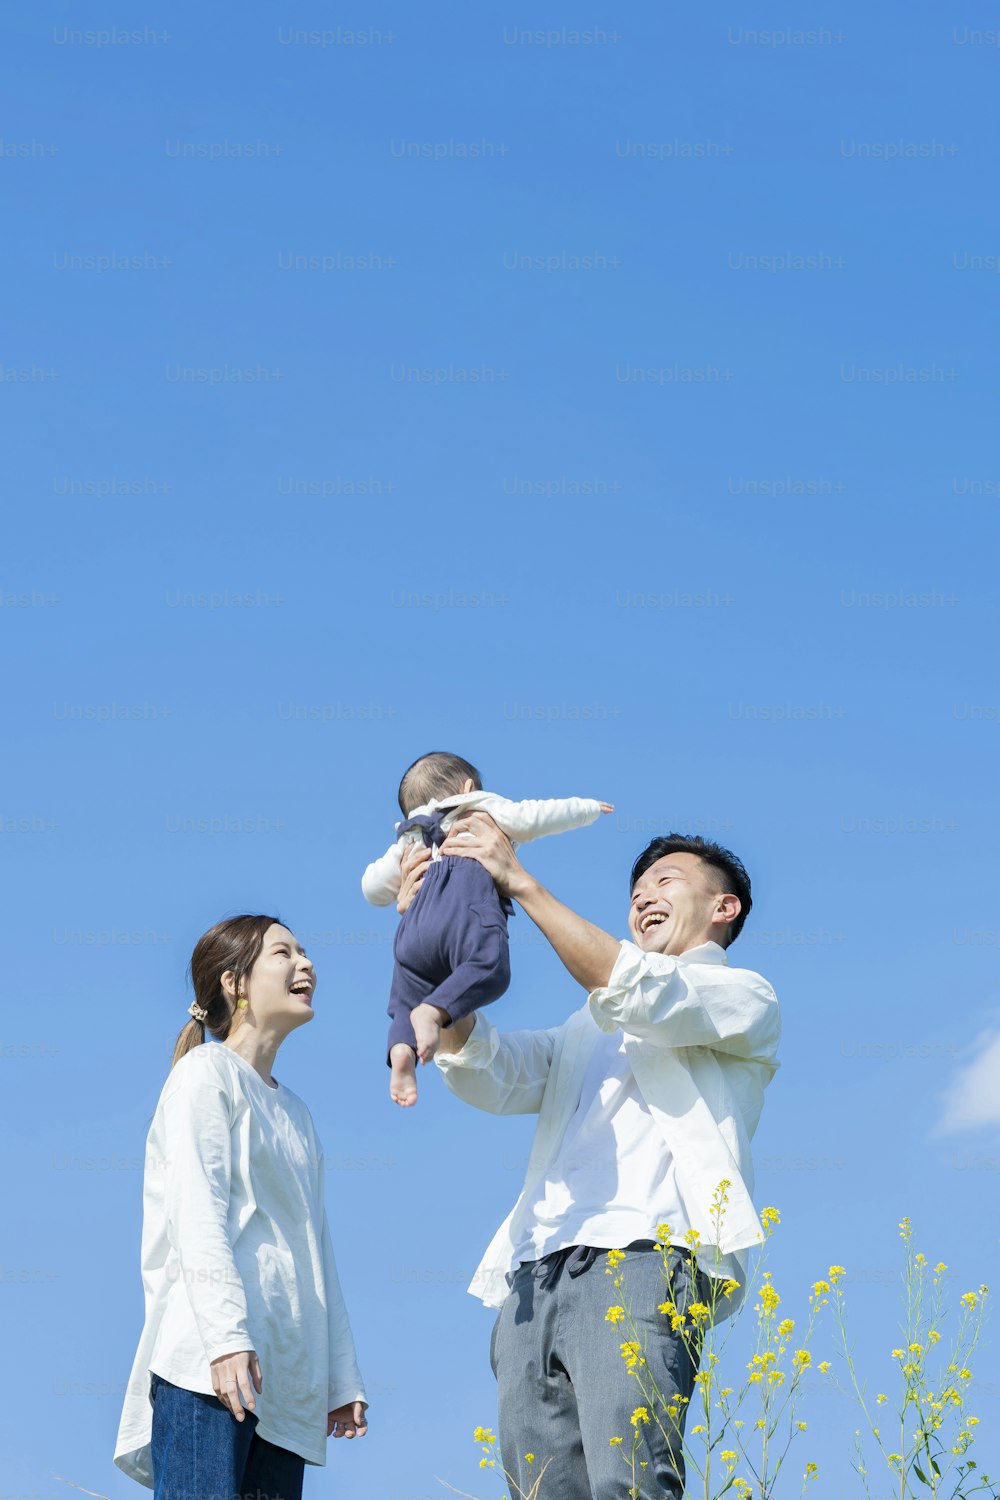 Padres sosteniendo a su bebé bajo el cielo azul